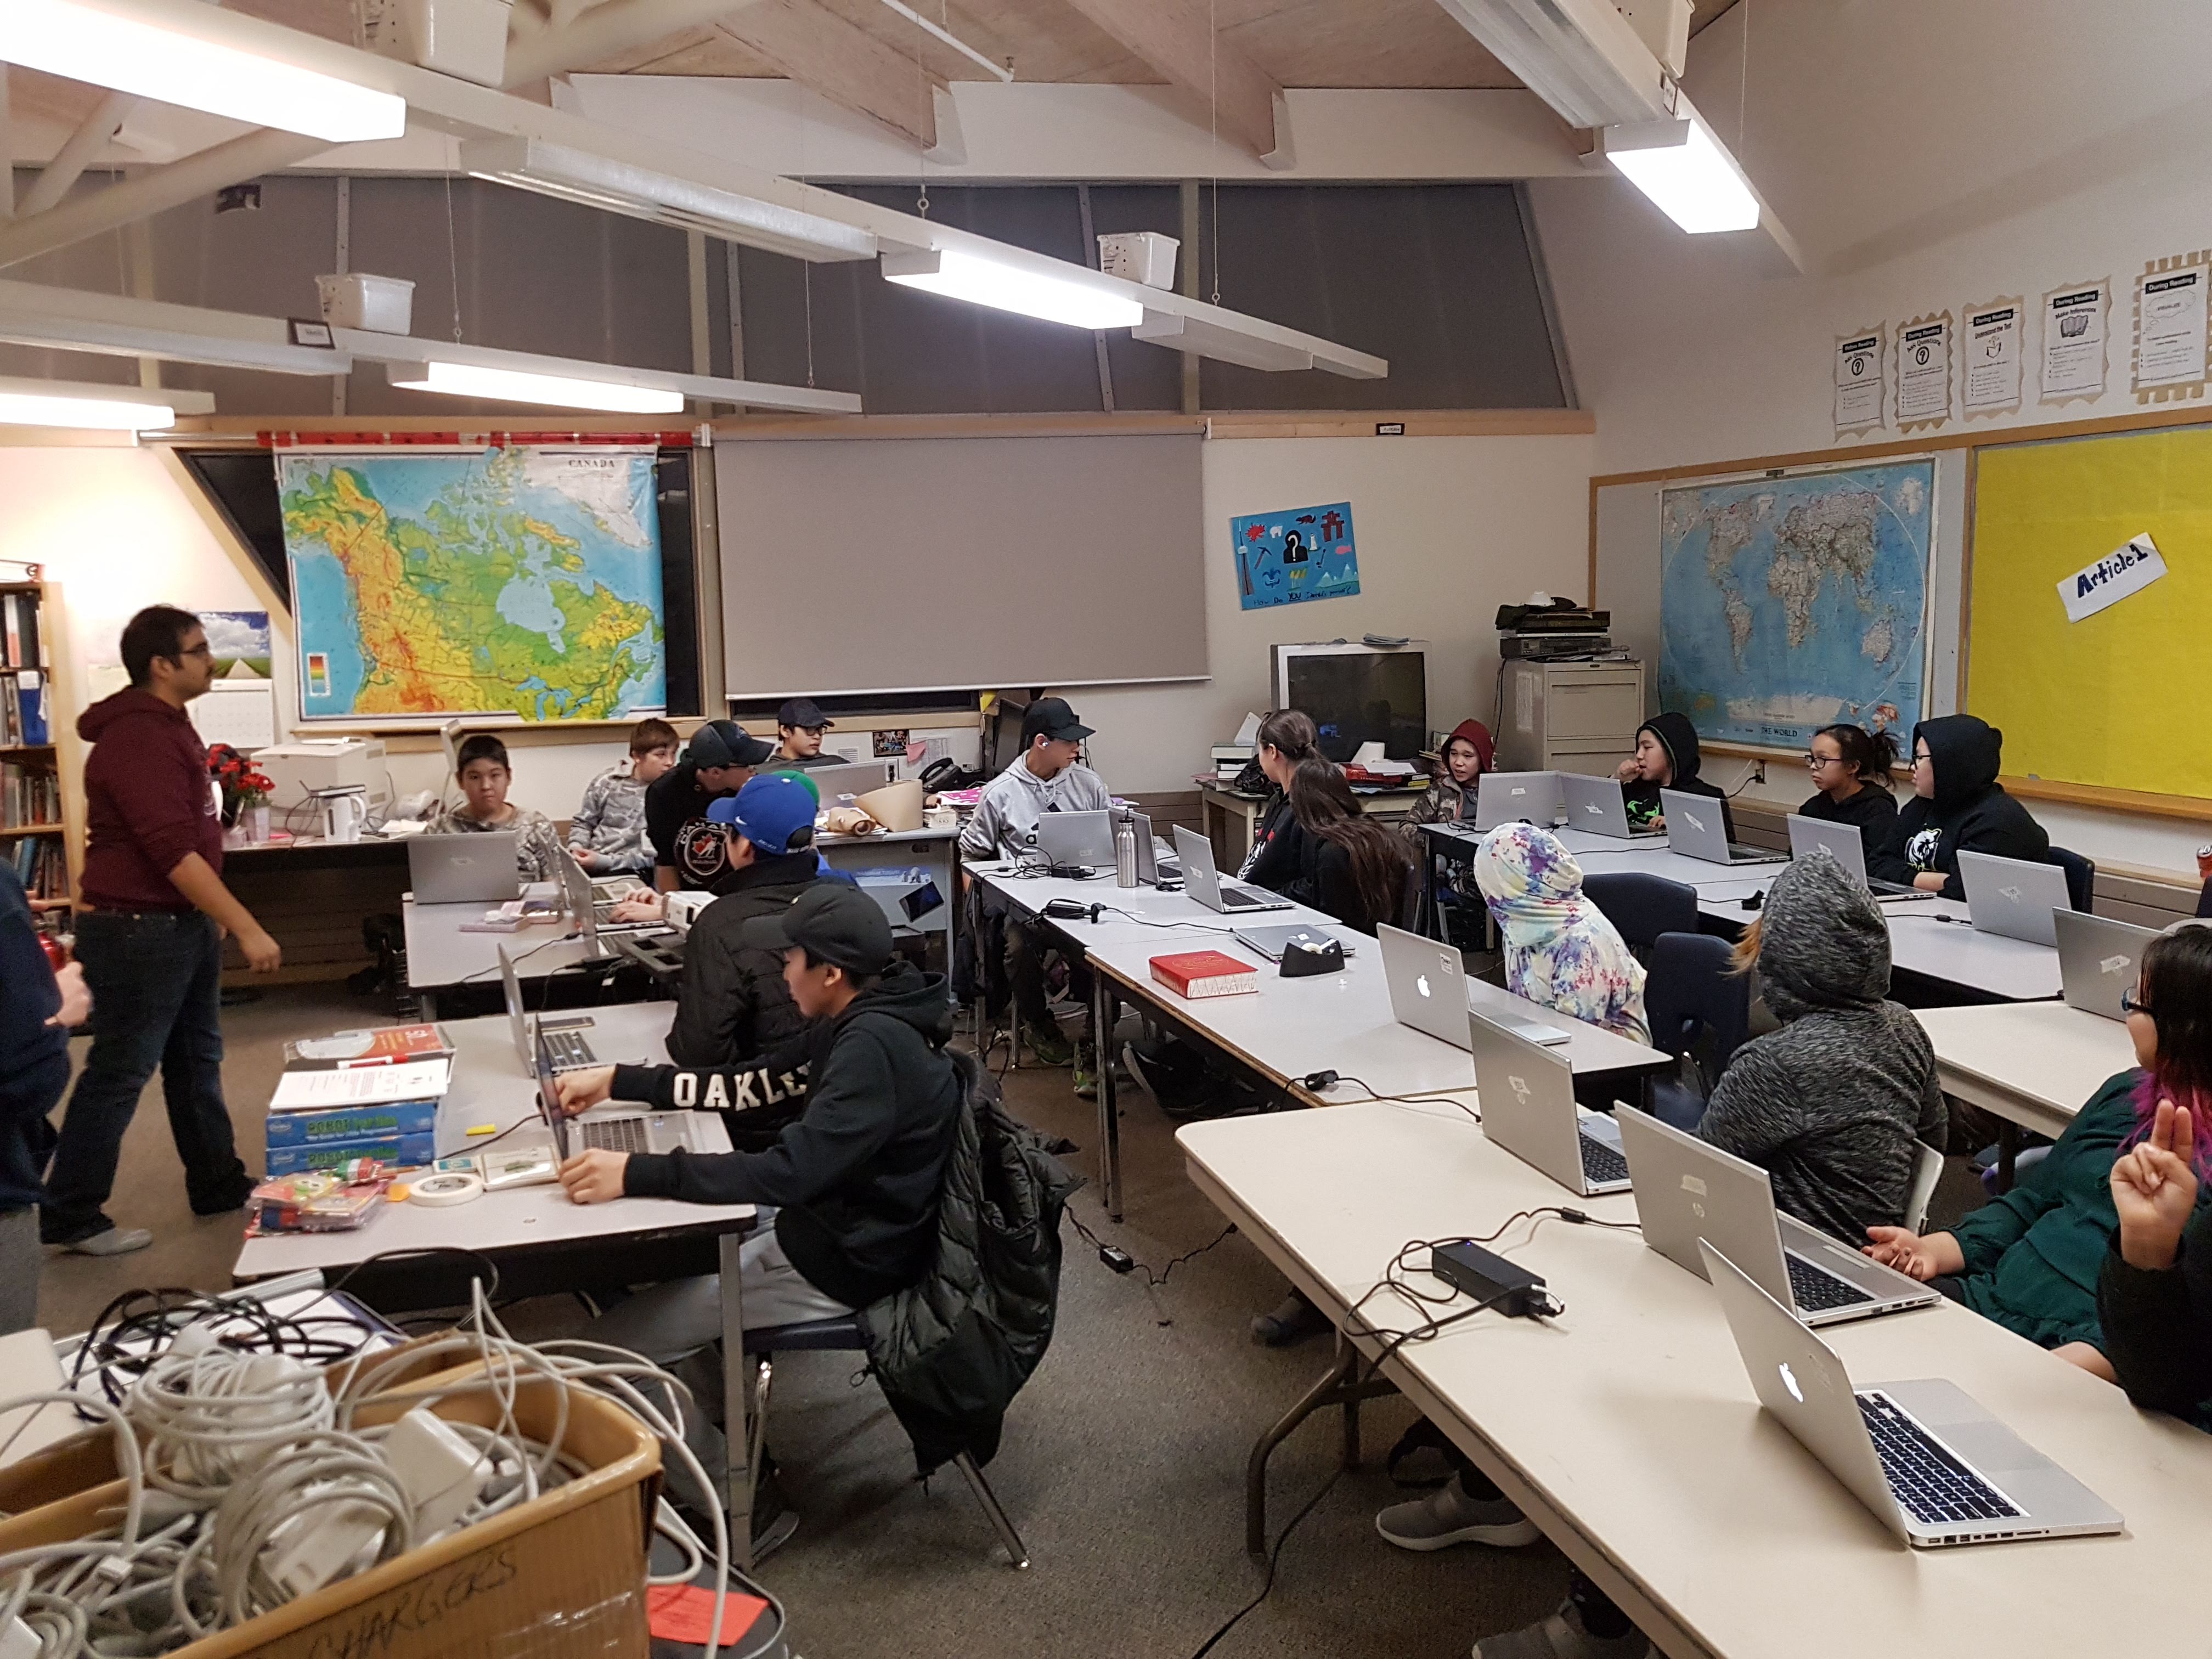 Des étudiants utilisent des ordinateurs portatifs en classe au Nunavut